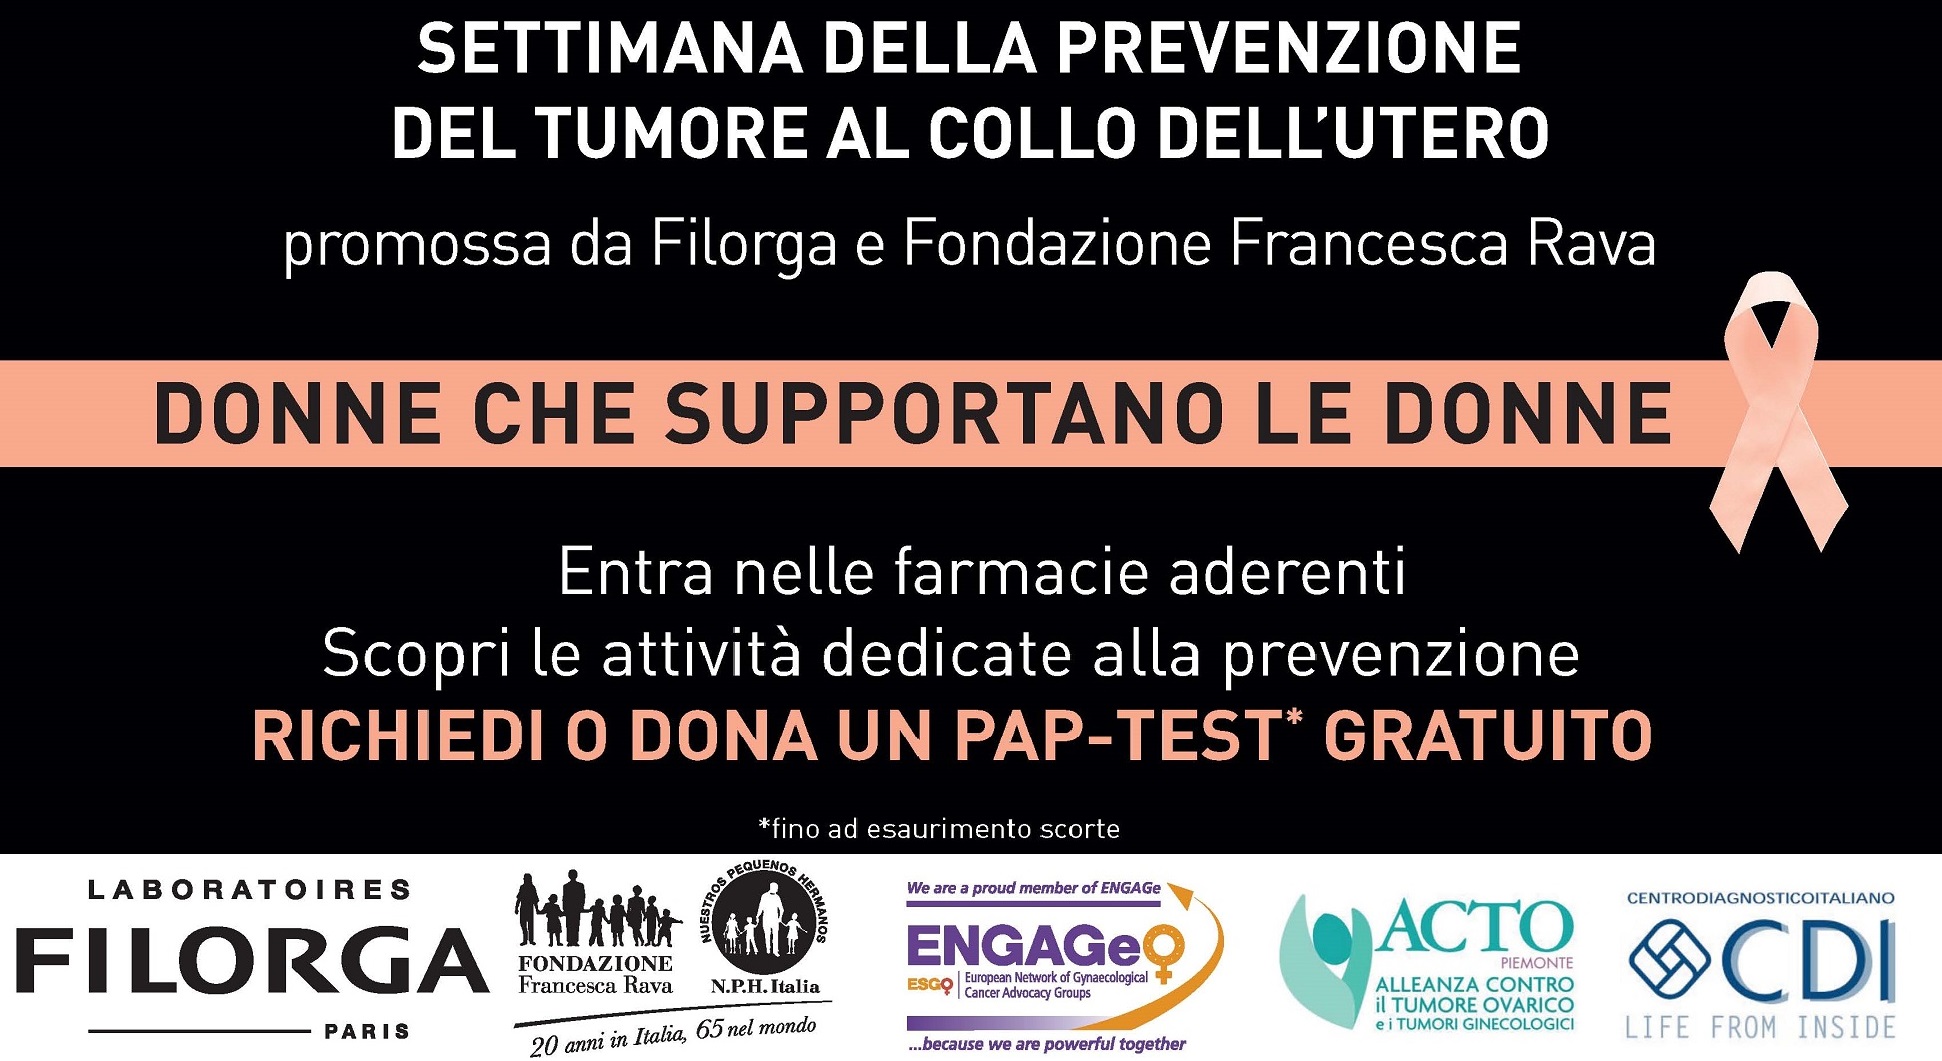 CDI, Fondazione Francesca Rava e Filorga insieme per la prevenzione del tumore del collo dell’utero